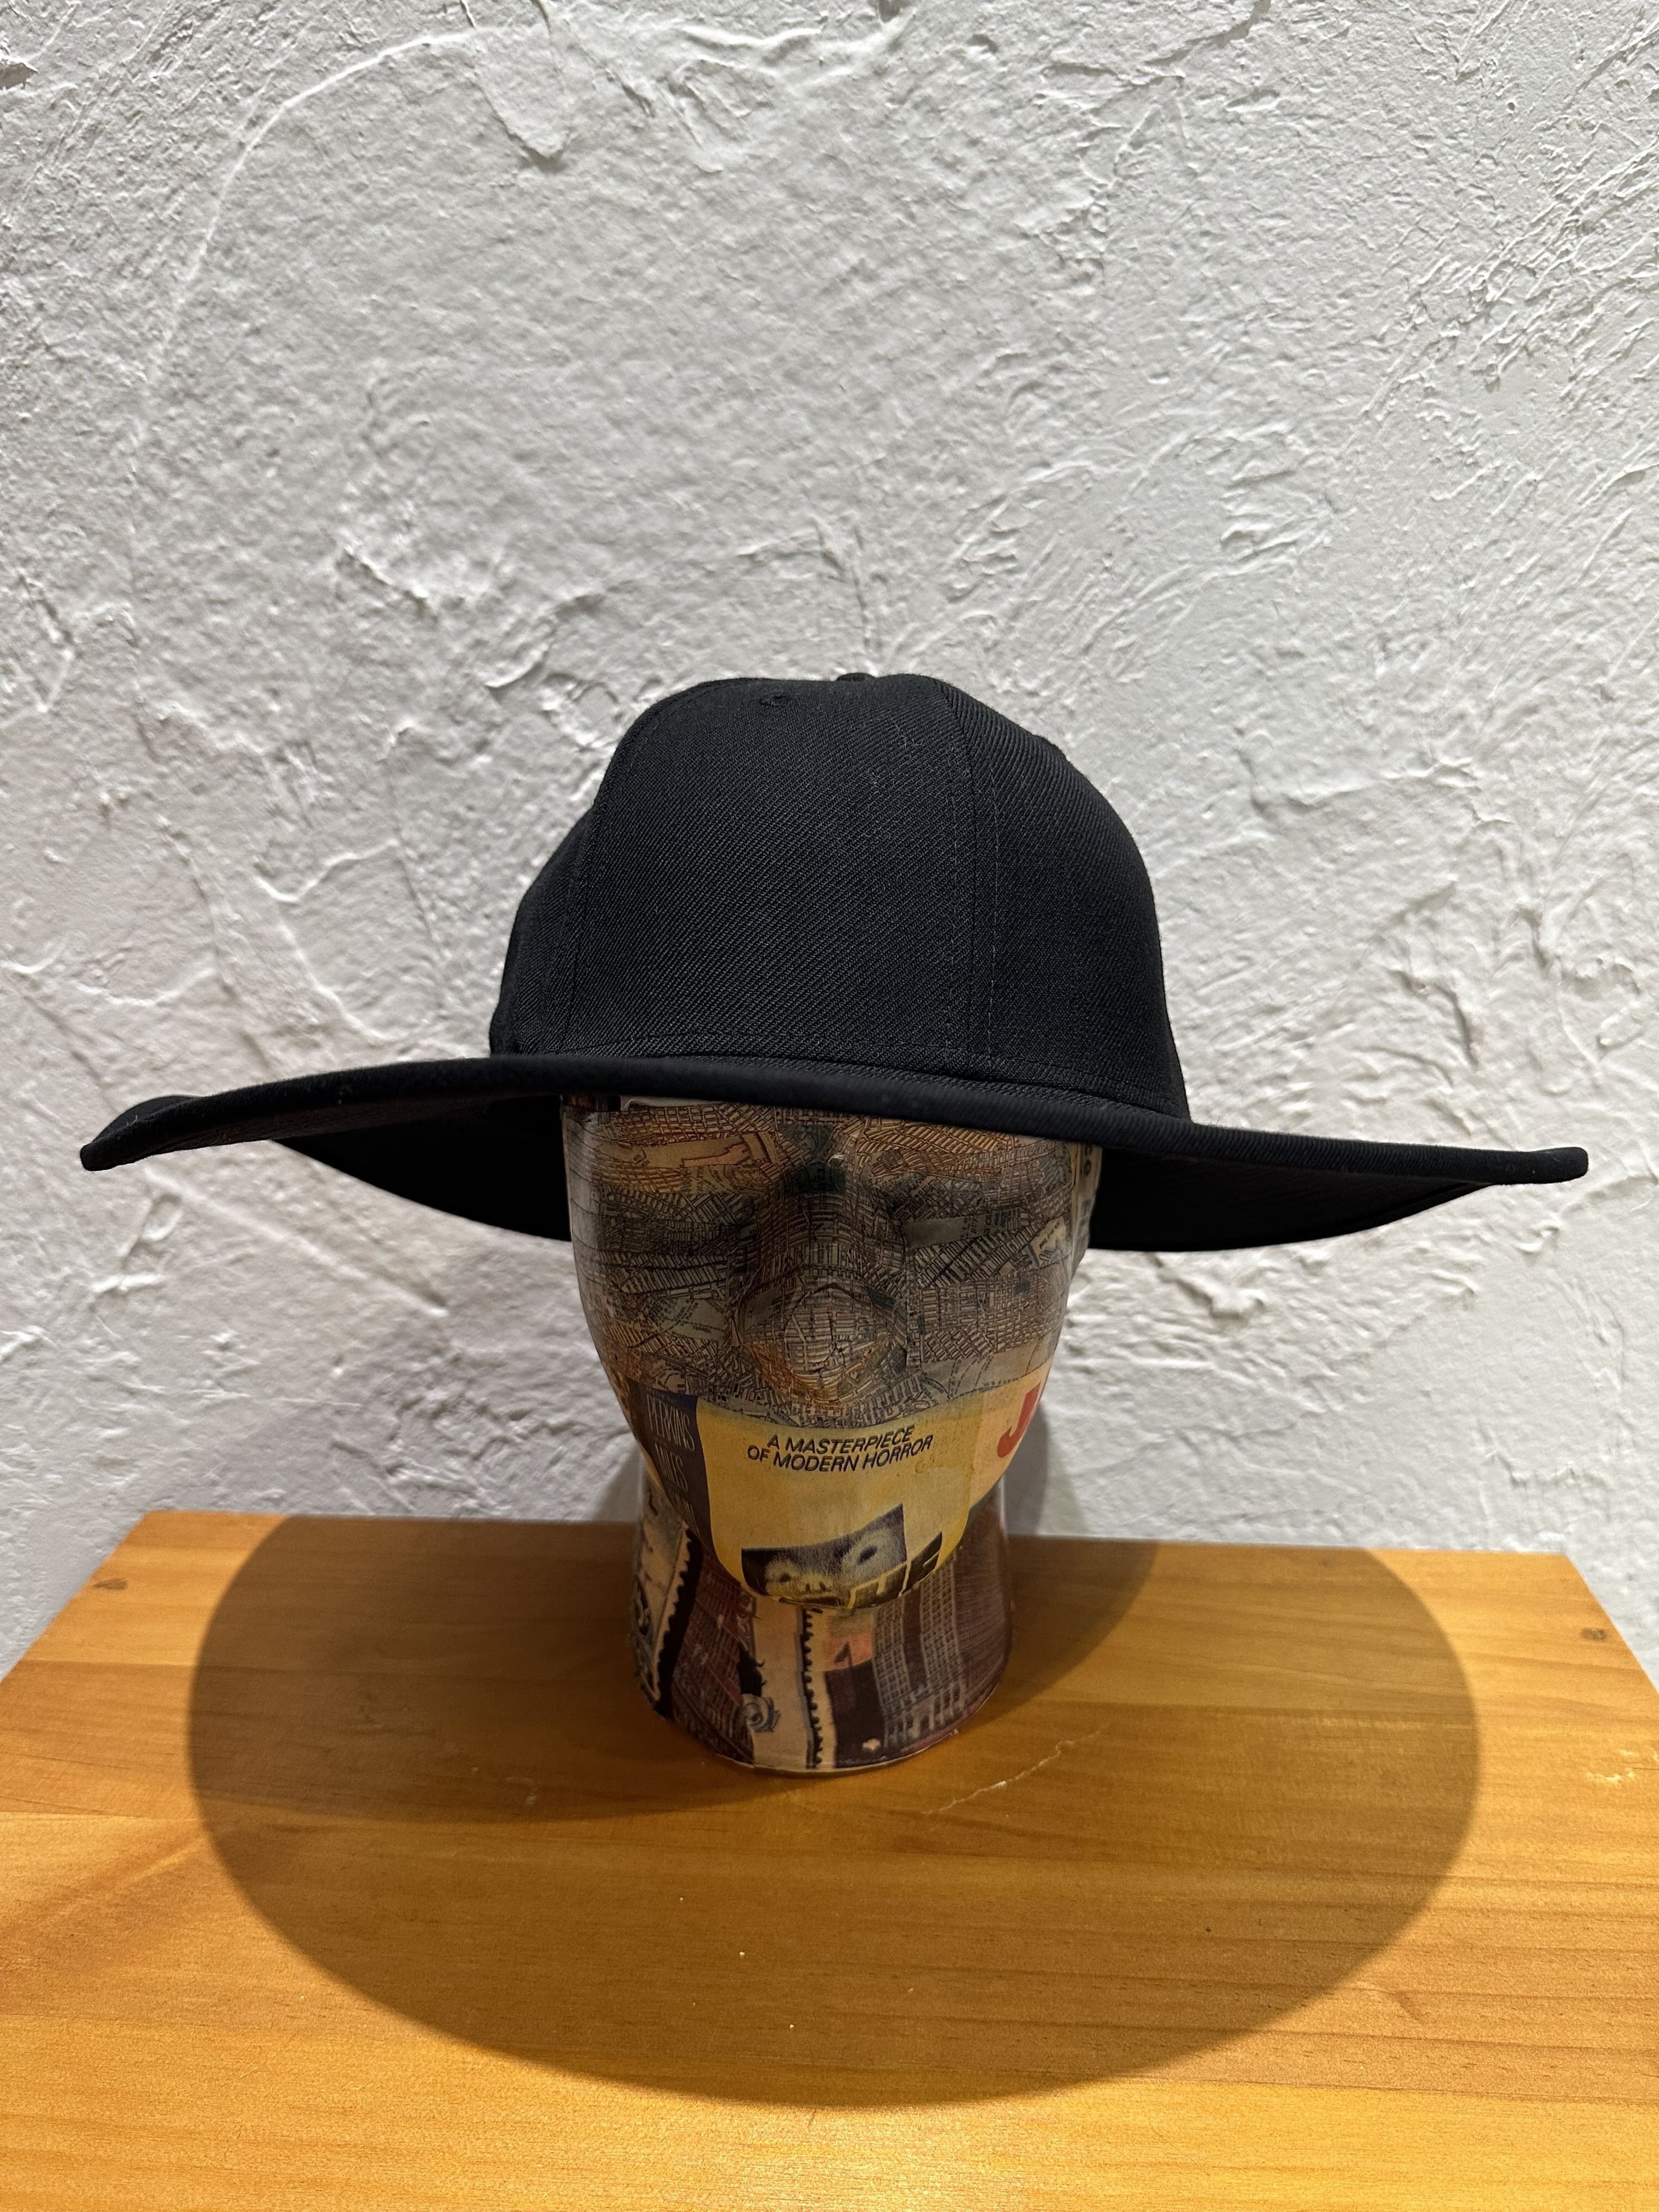 日本限定企画で即完売のアイテムNEW ERA NY FITTED LONG BRIM HAT - 帽子